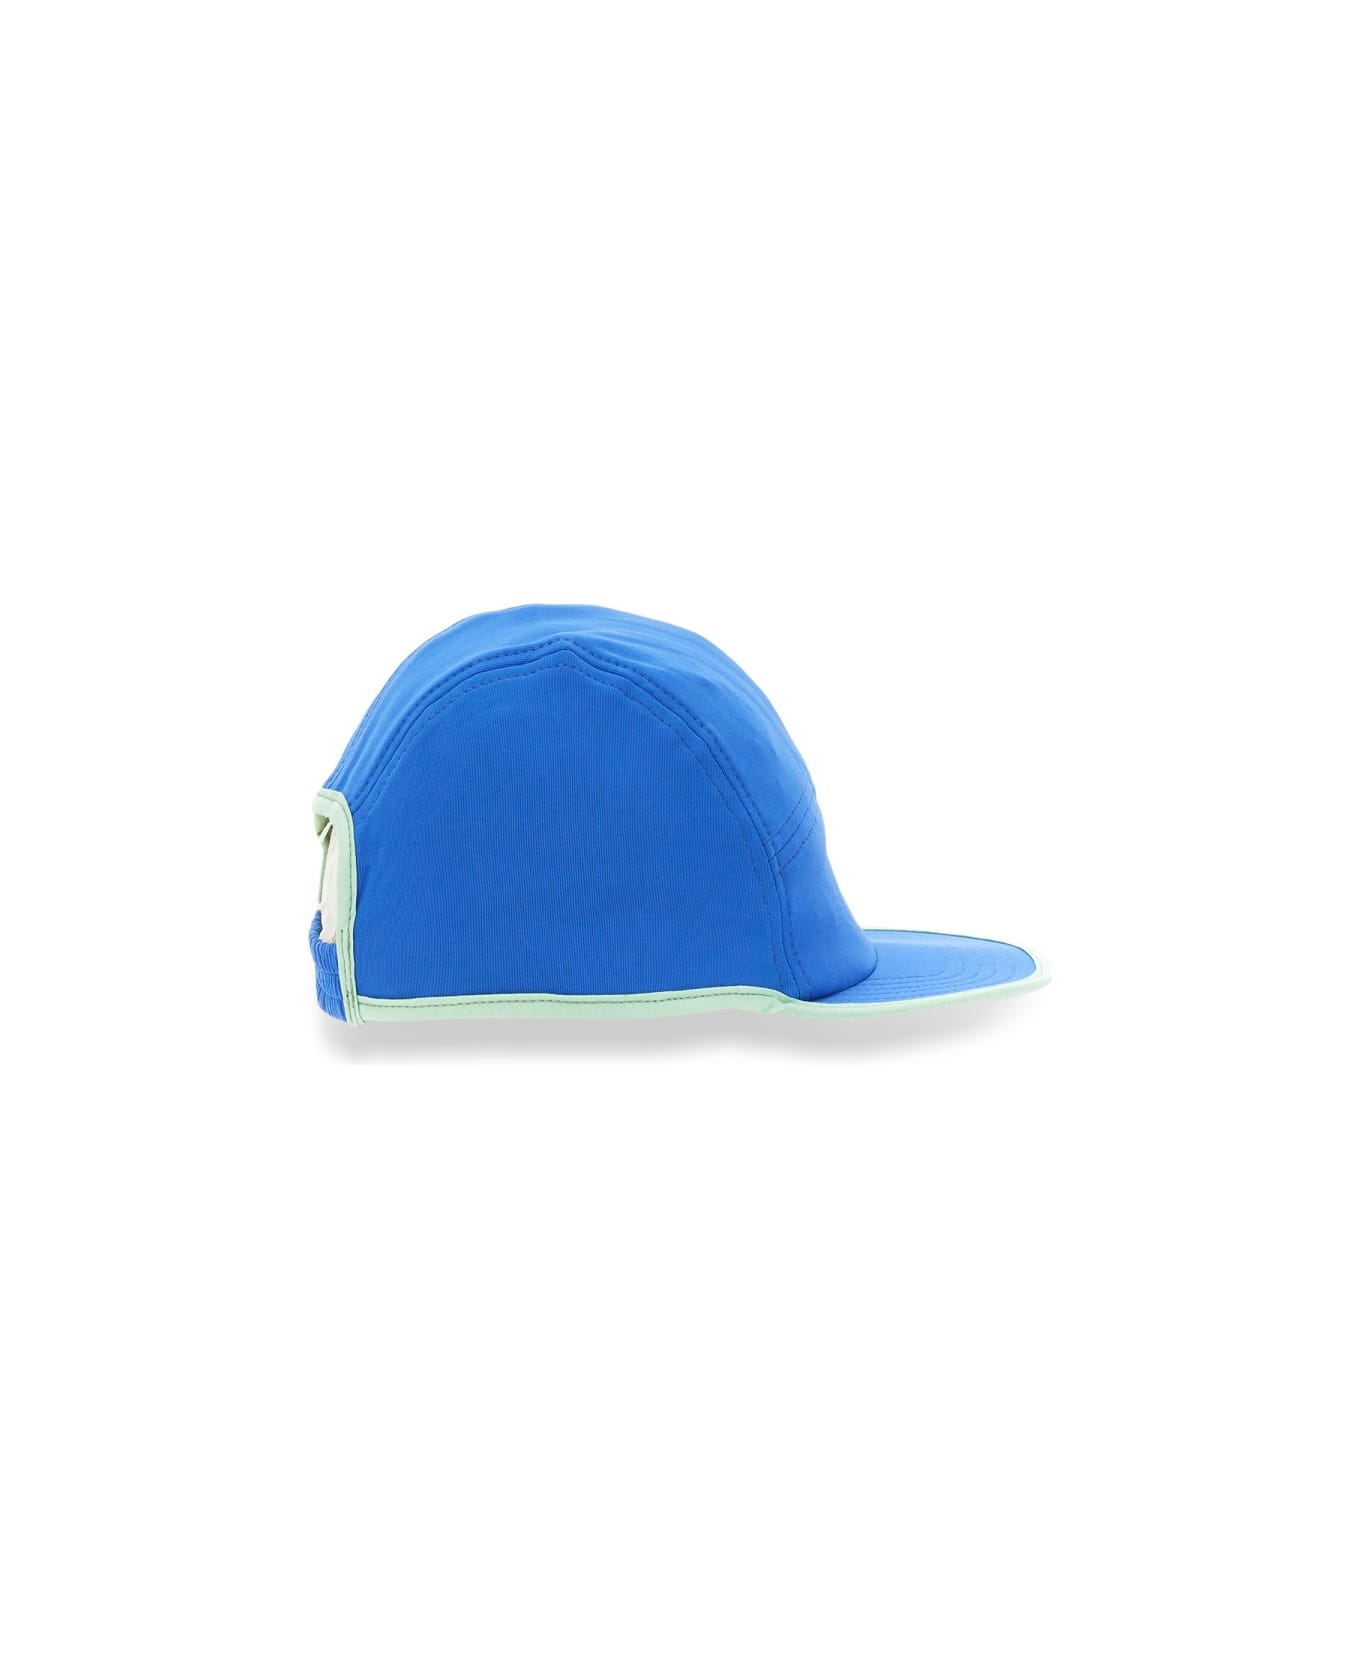 Sunnei Hat With Visor - BLUE